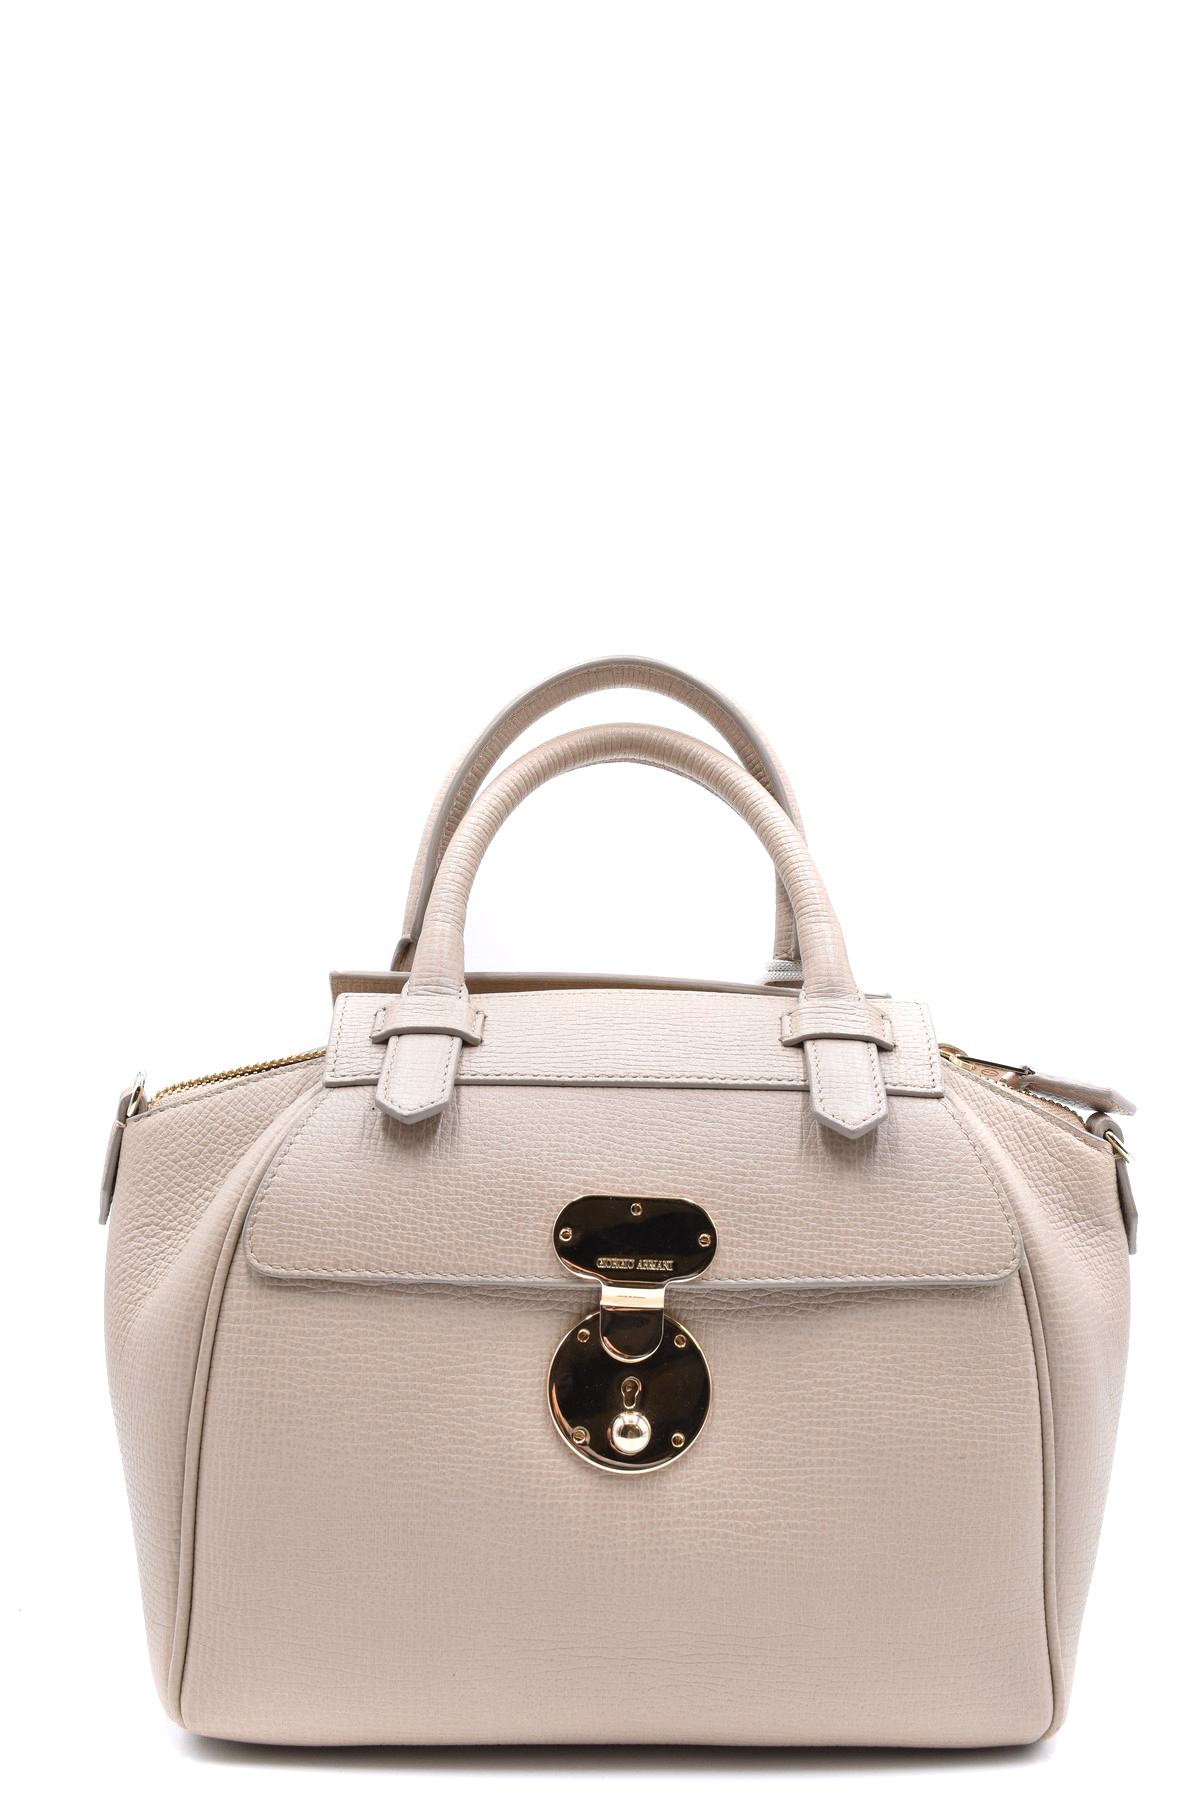 Emporio Armani women Myea handbags nero: Handbags: Amazon.com